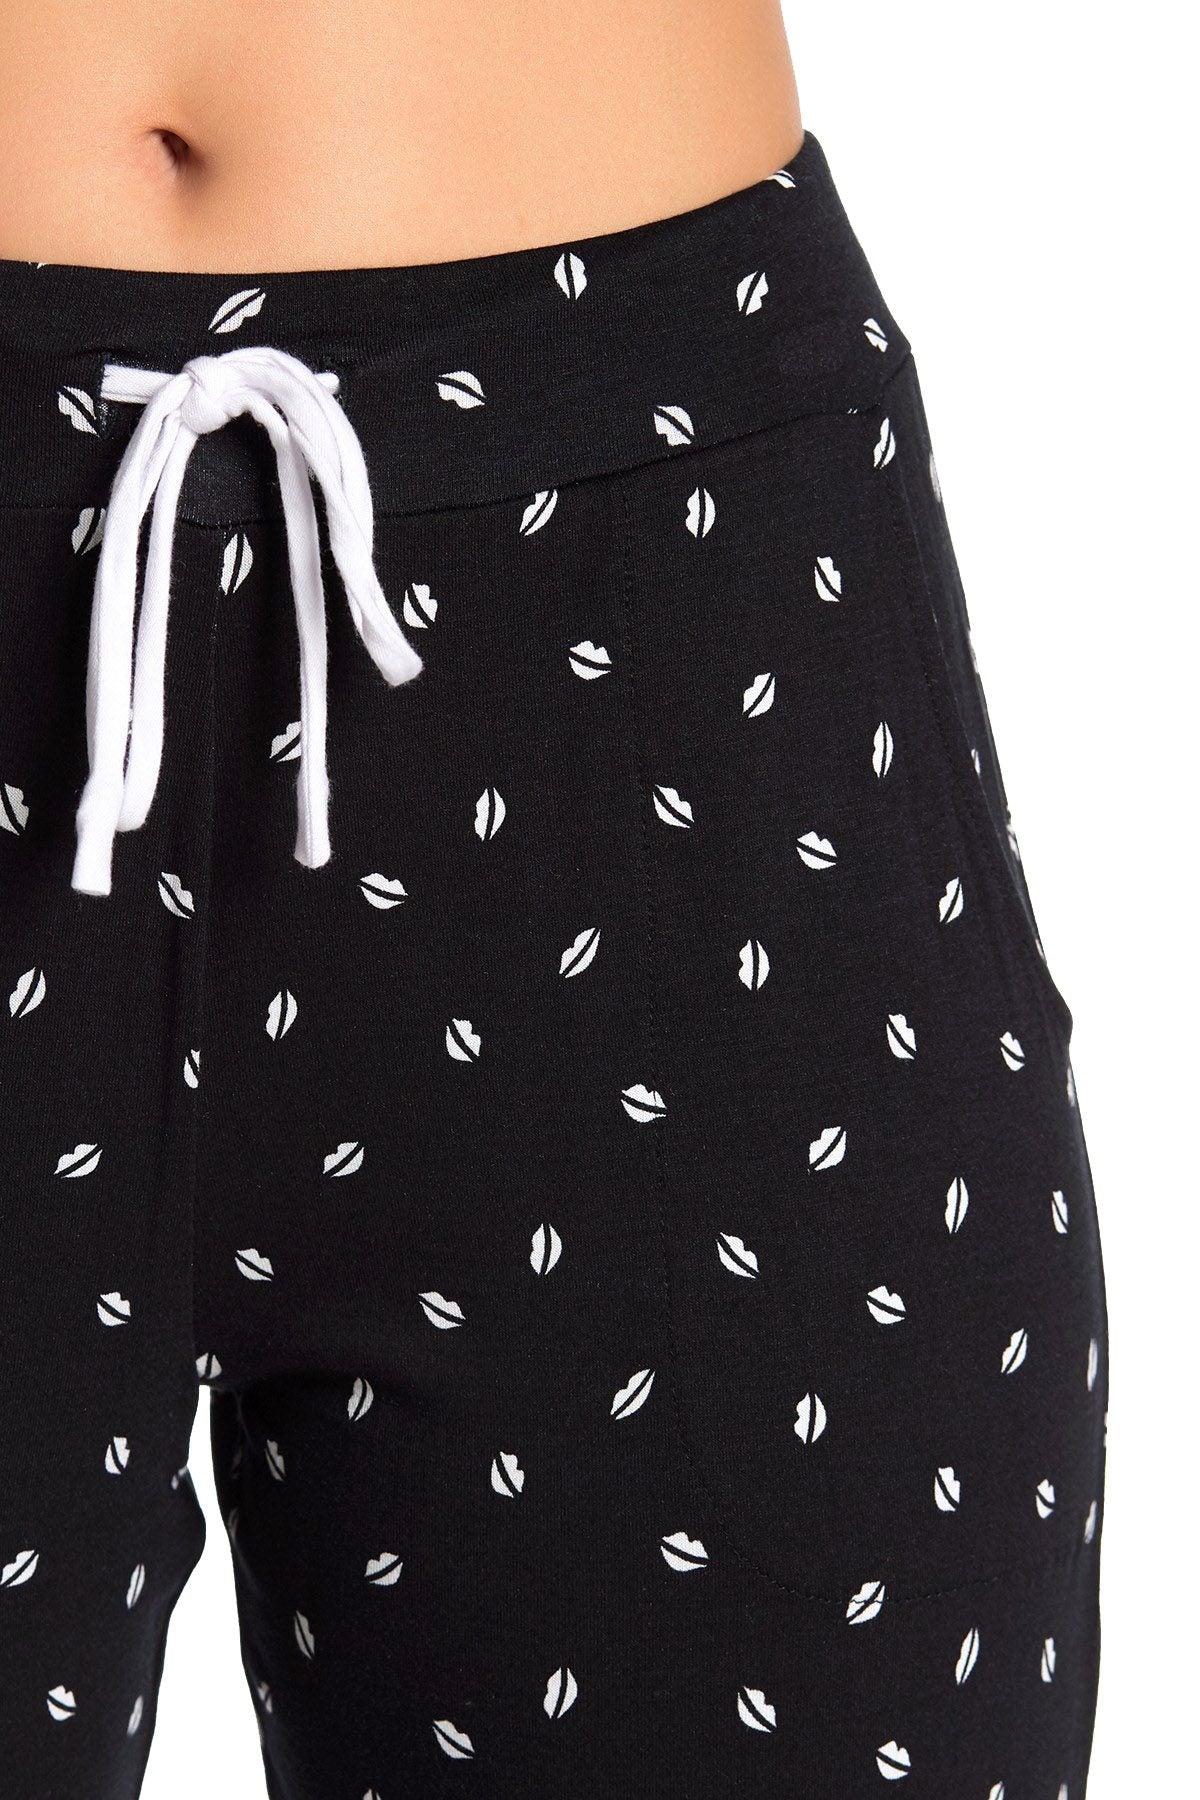 DKNY Black Allover Lips Printed Pajama Jogger Pant